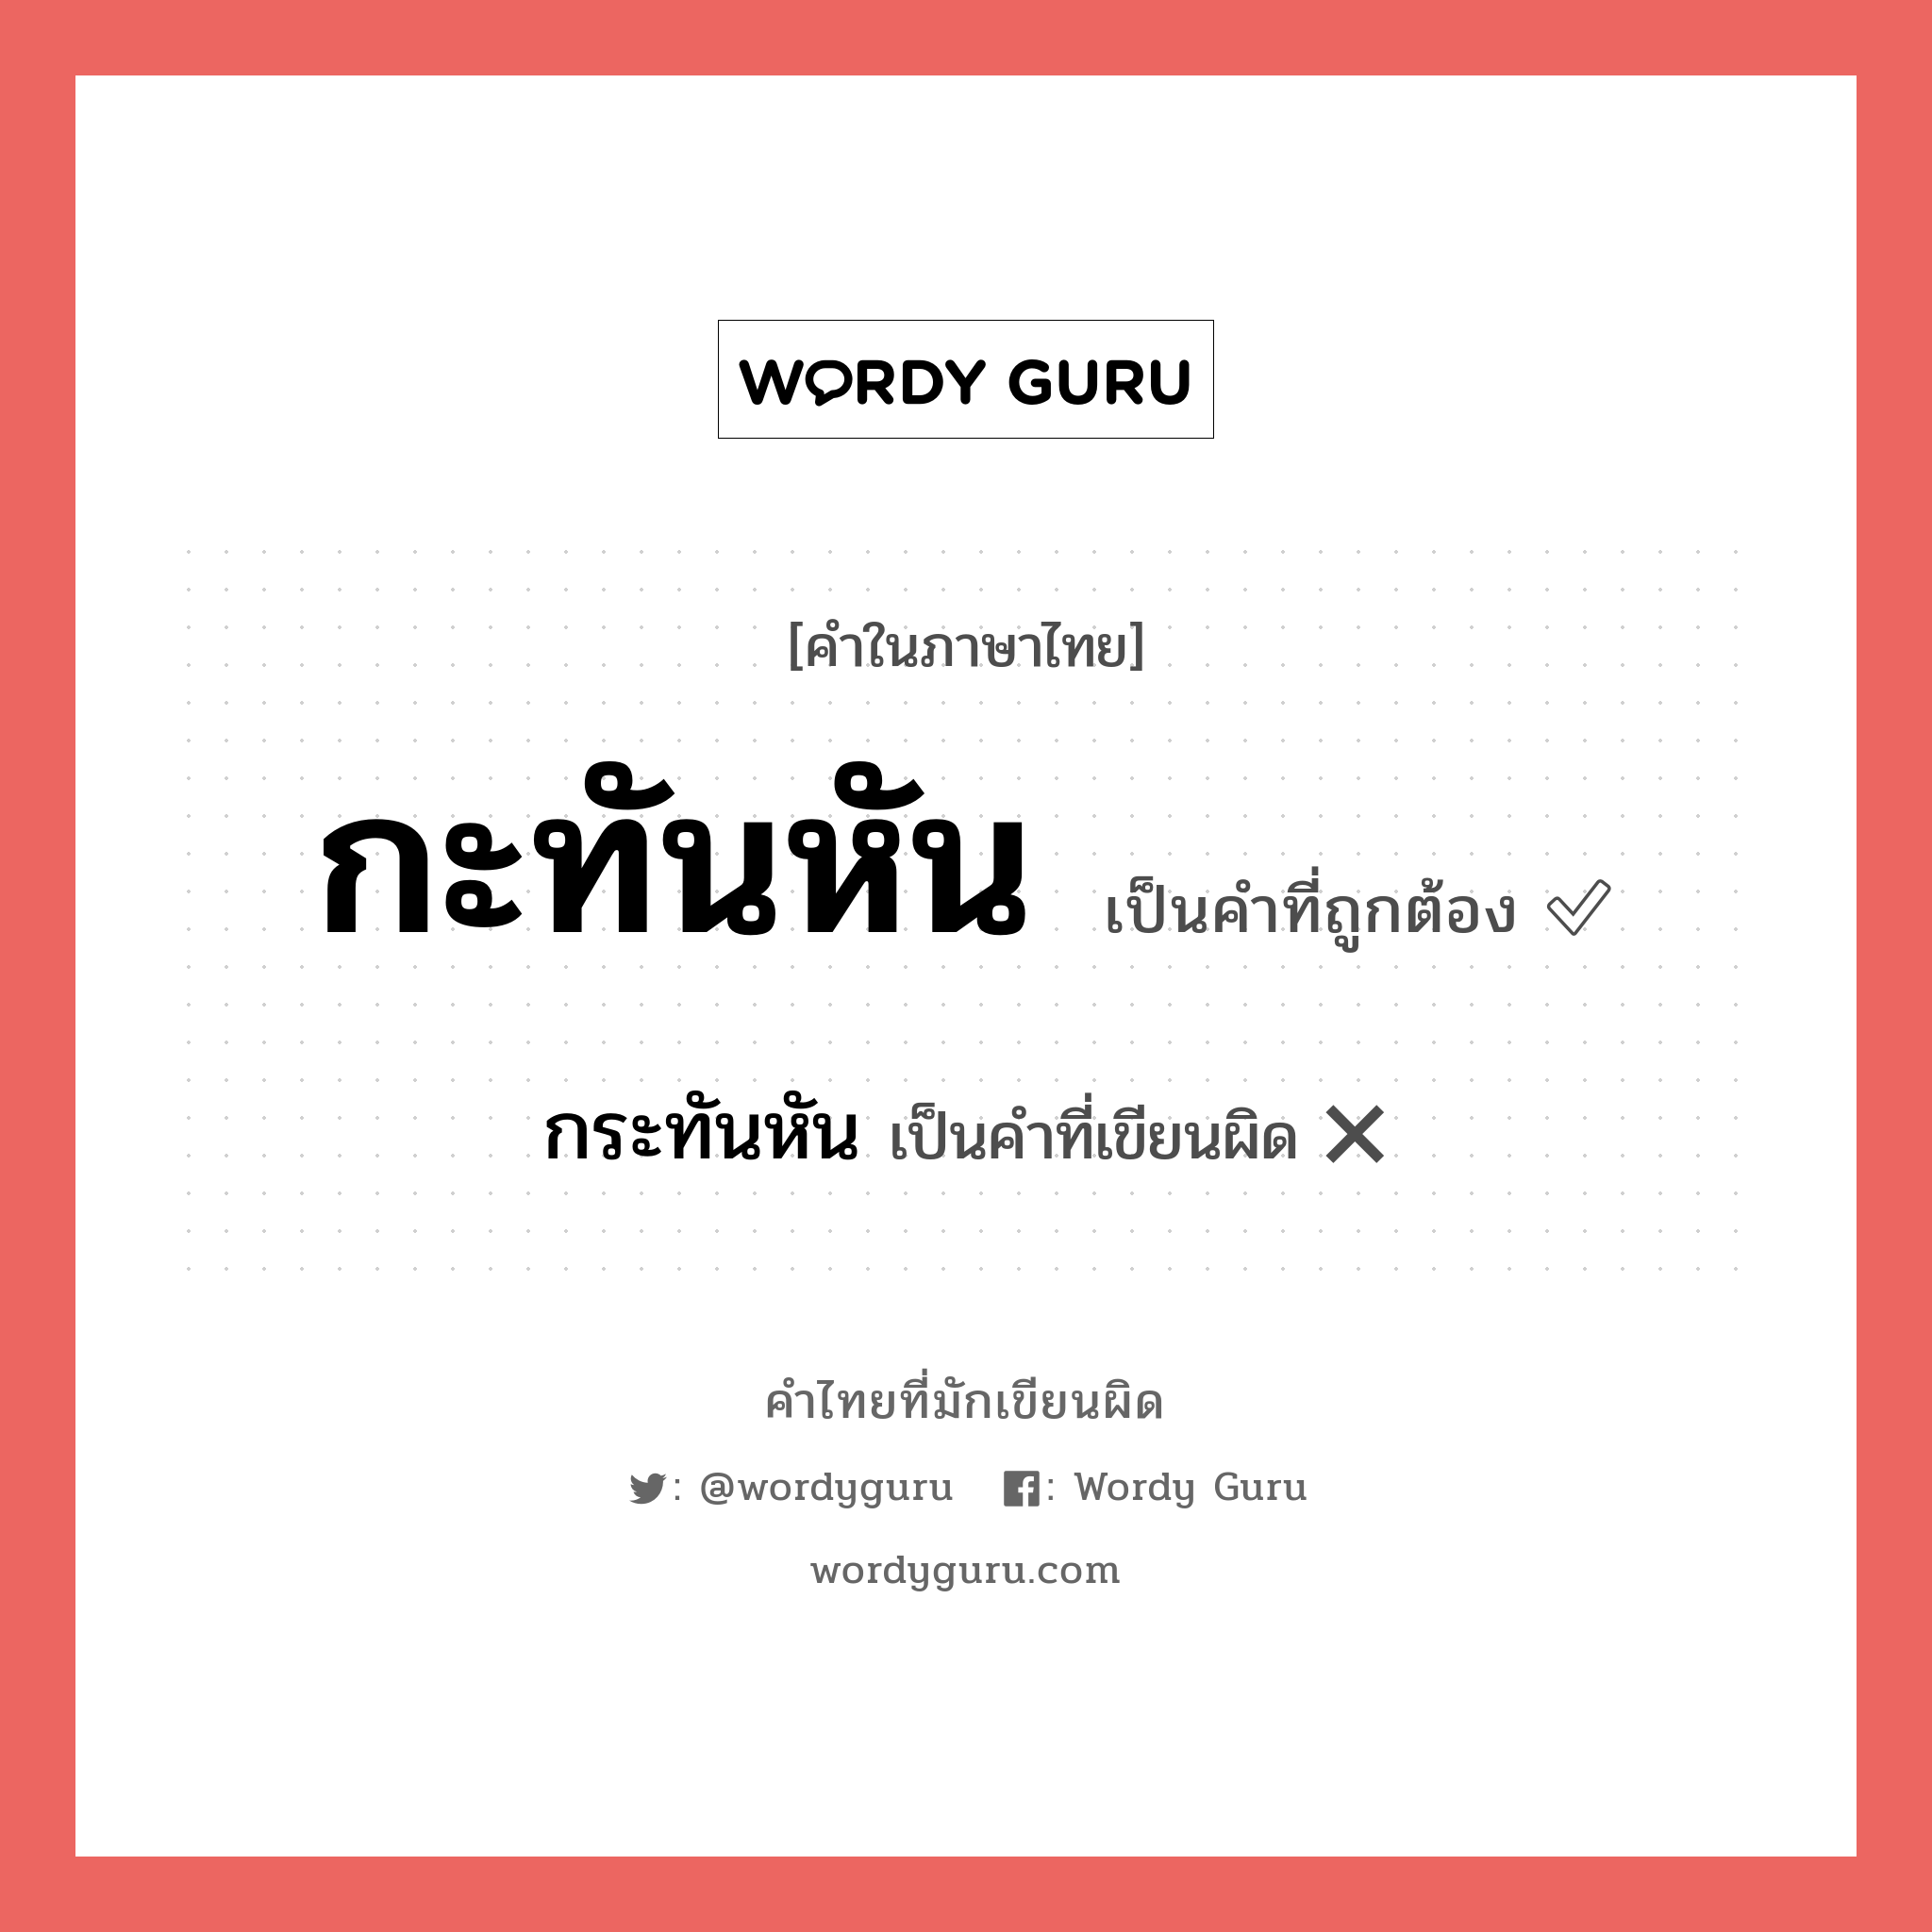 กะทันหัน หรือ กระทันหัน เขียนยังไง? คำไหนเขียนถูก?, คำในภาษาไทยที่มักเขียนผิด กะทันหัน คำที่ผิด ❌ กระทันหัน